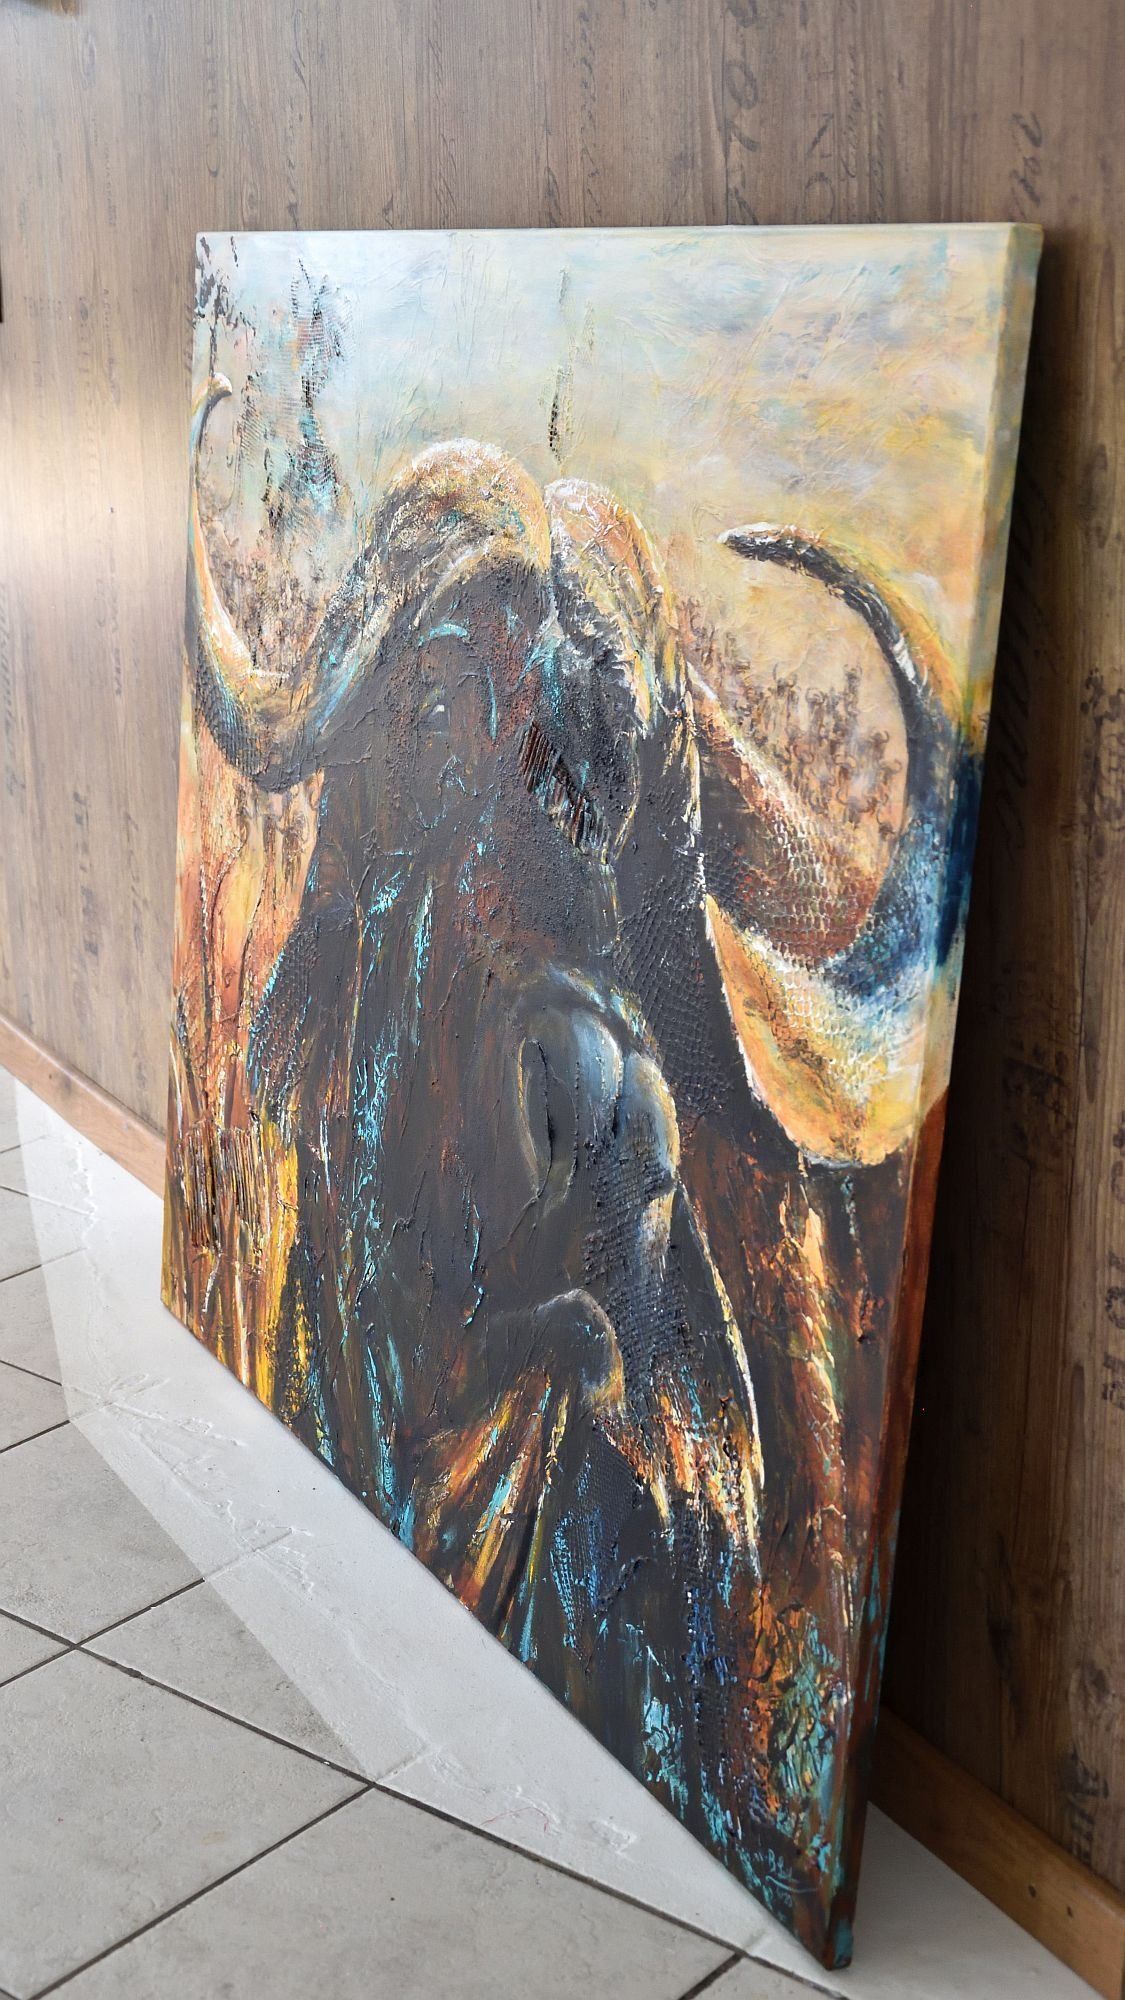 Portrait eines afrikanischen Büffels steht an eine Wand gelehnt, so dass man die bemalten Seiten des Gemäldes sehen kann